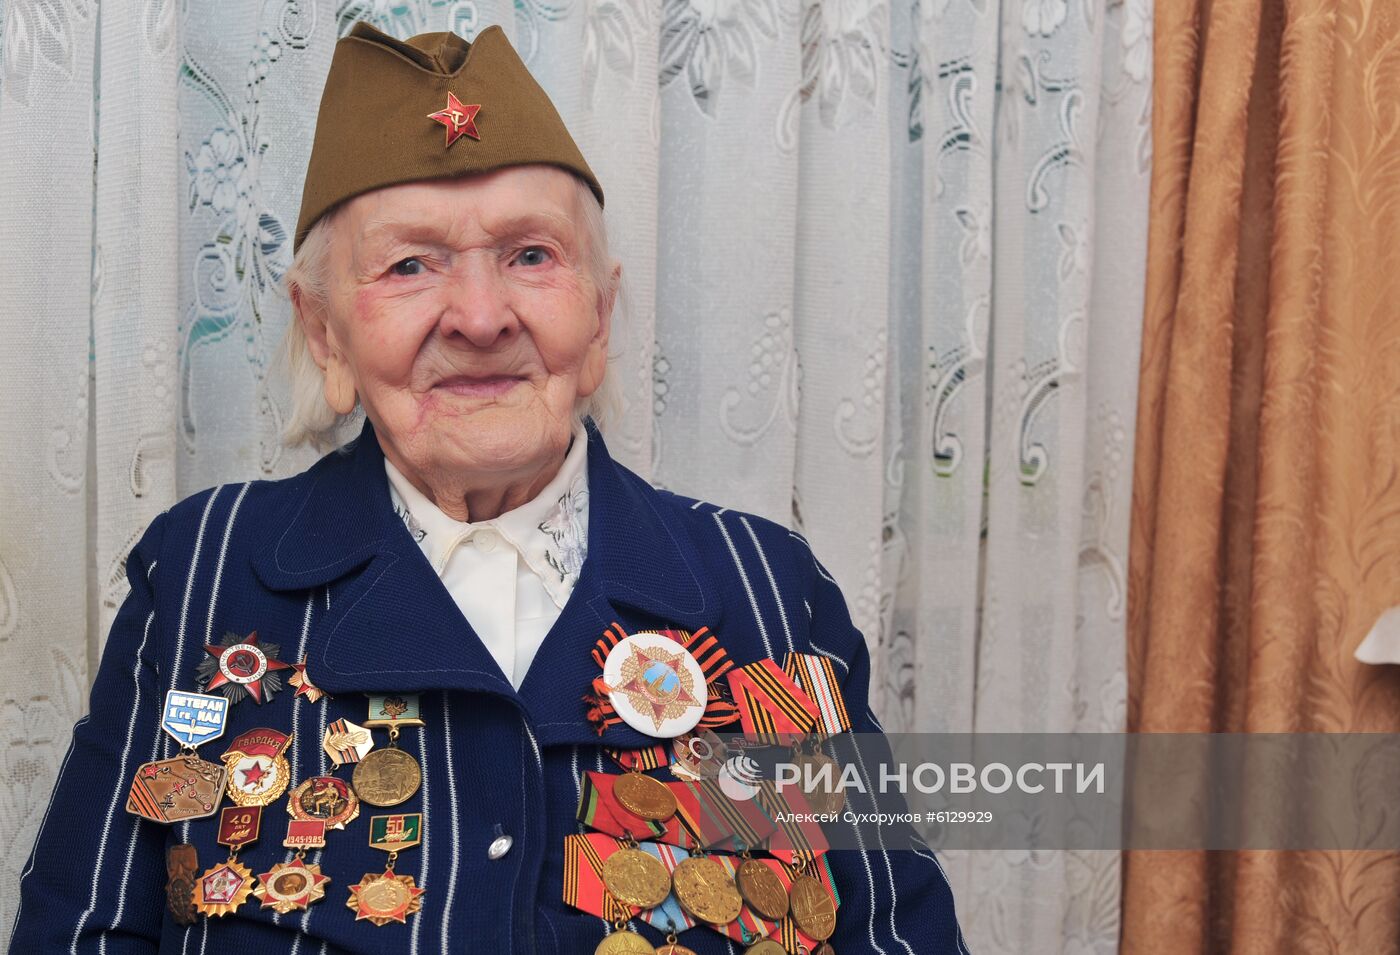 Ветеран Великой Отечественной войны Ольга Даниловна Стрельникова